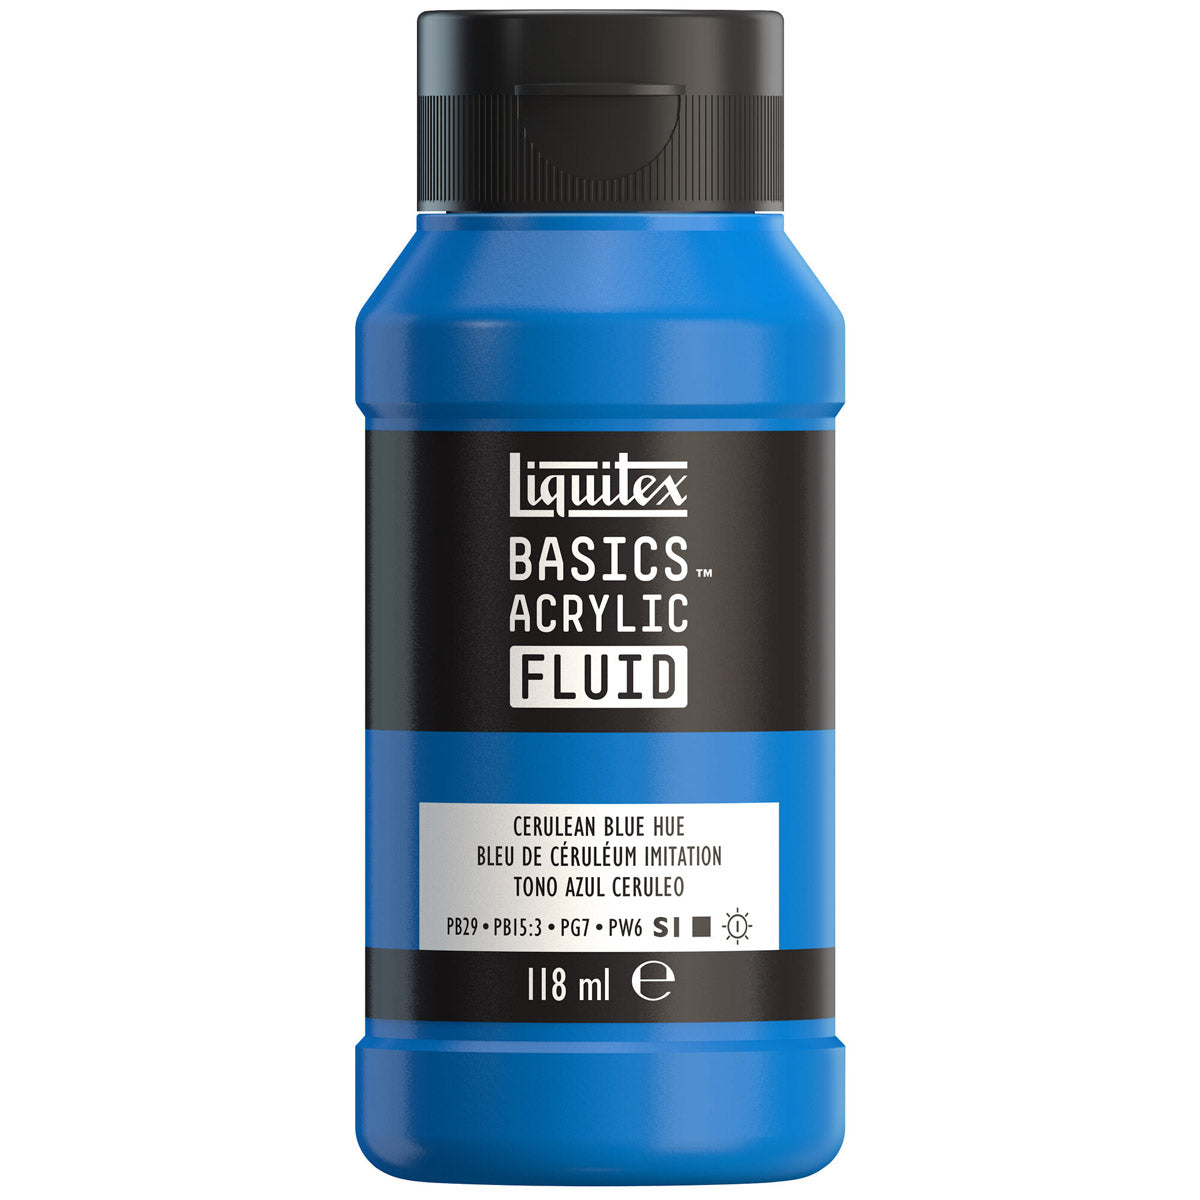 Liquitex Basics Fluid Acrylic 118ml - Cerulean Blue Hue S1